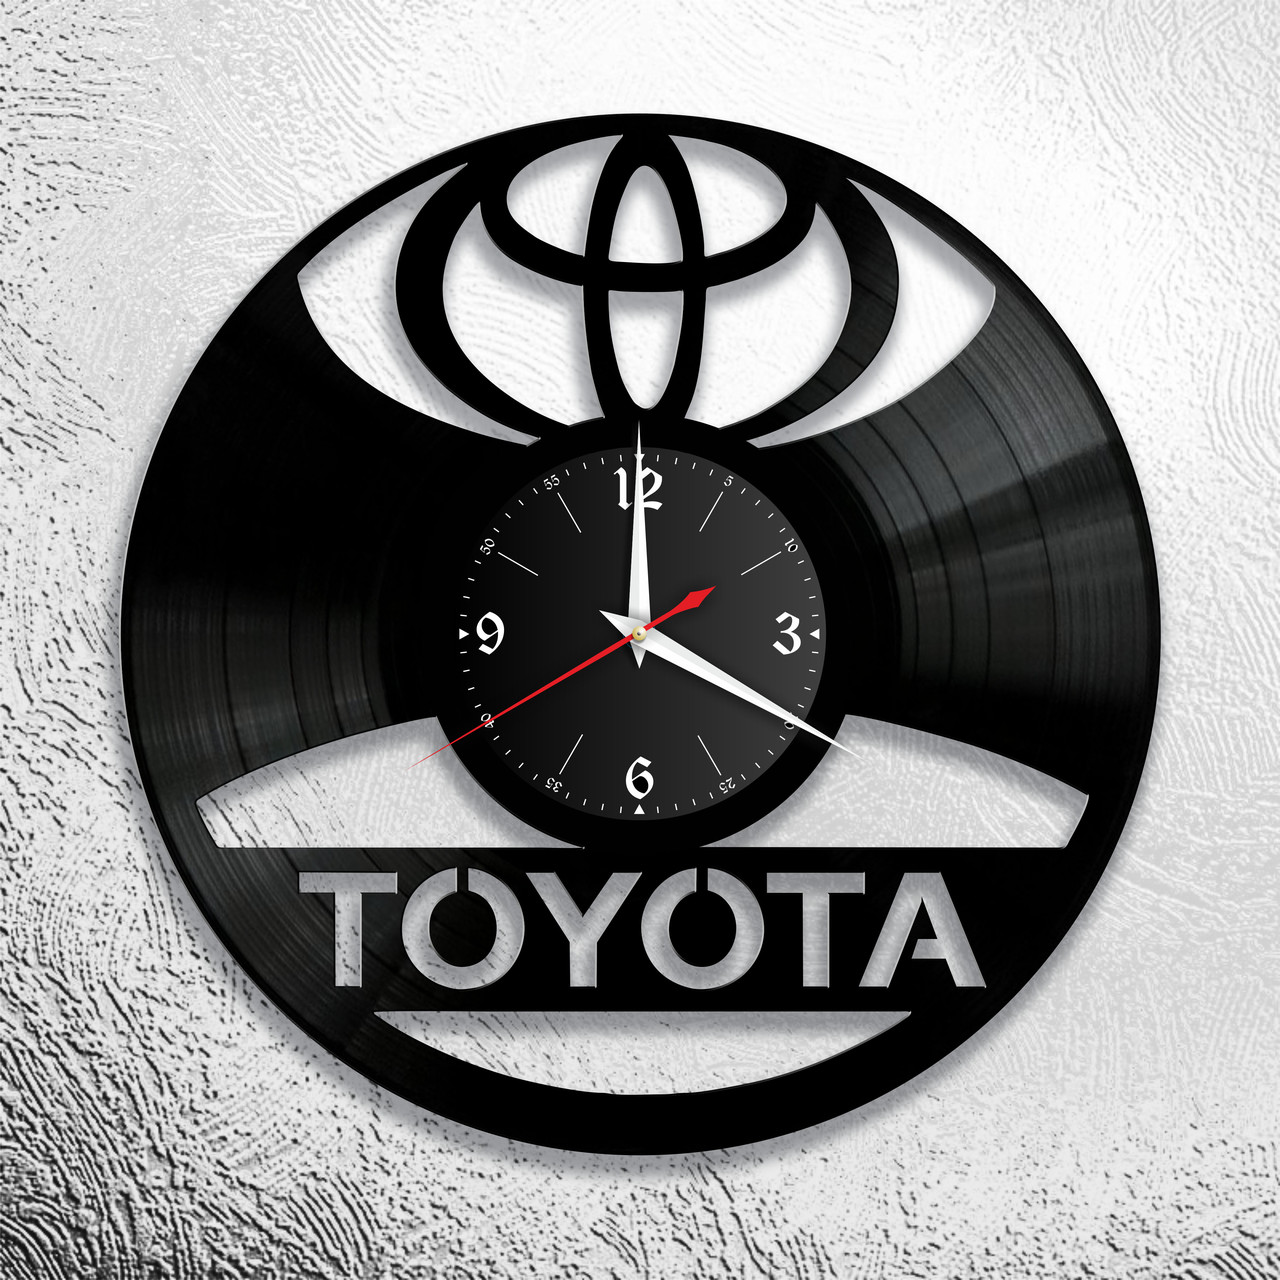 Оригинальные часы из виниловых пластинок  "Toyota" версия 1, фото 1